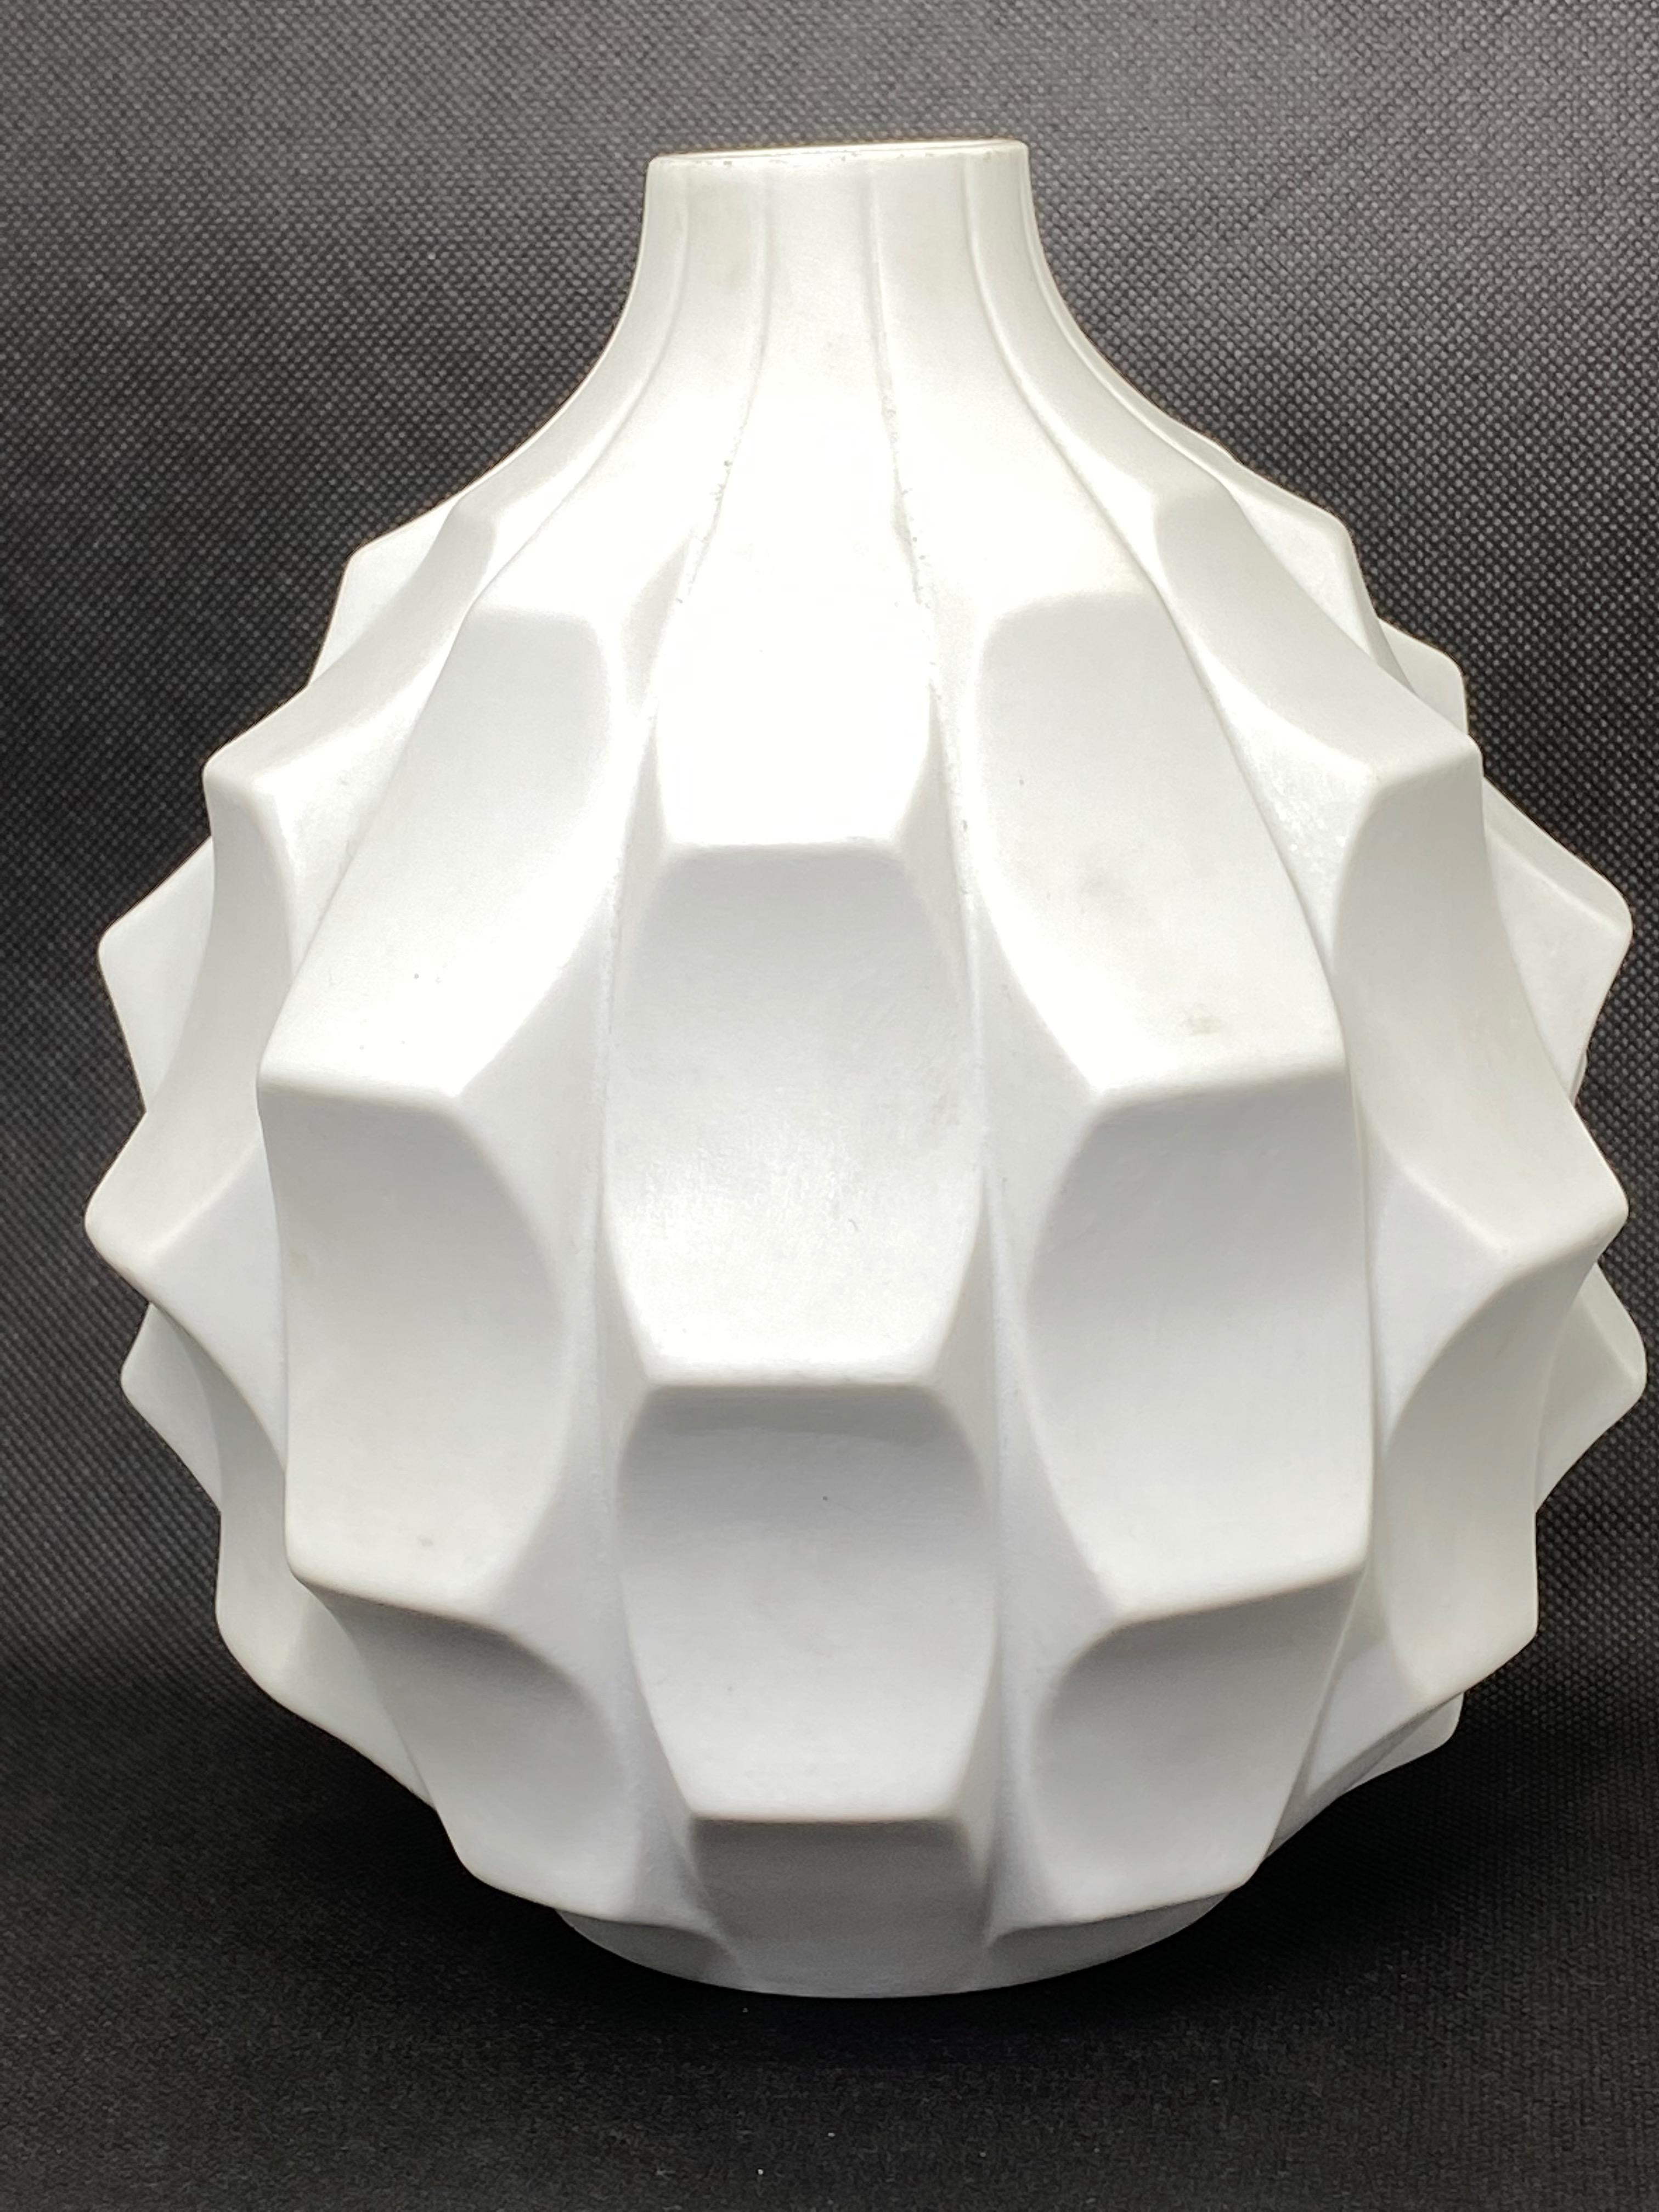 Mid-20th Century Midcentury Bisque Artichoke Vase by Heinrich Fuchs for Hutschenreuther, 1960s